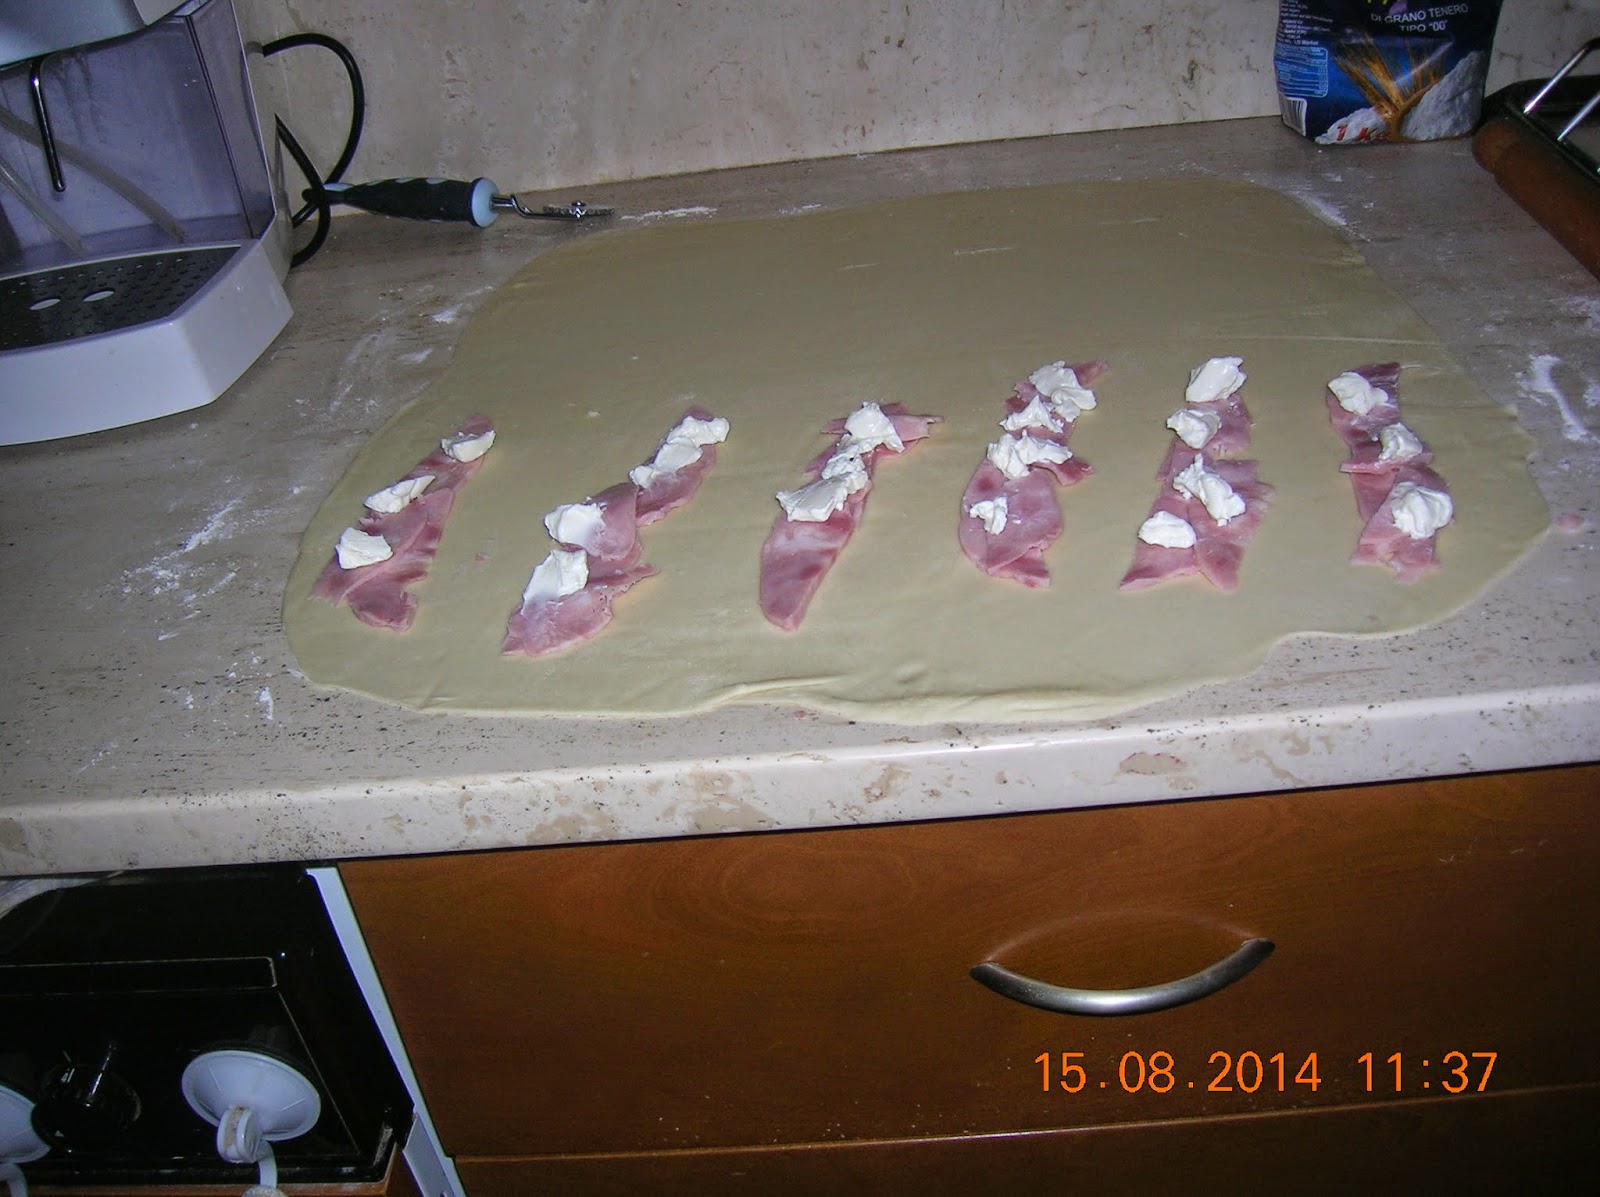 grissini con pasta sfoglia veloce  farciti - tagliatelle con  vongole- pesce finto - polpette di melanzane-medaglioni di manzo farciti - pane fatto in casa  con lievito madre